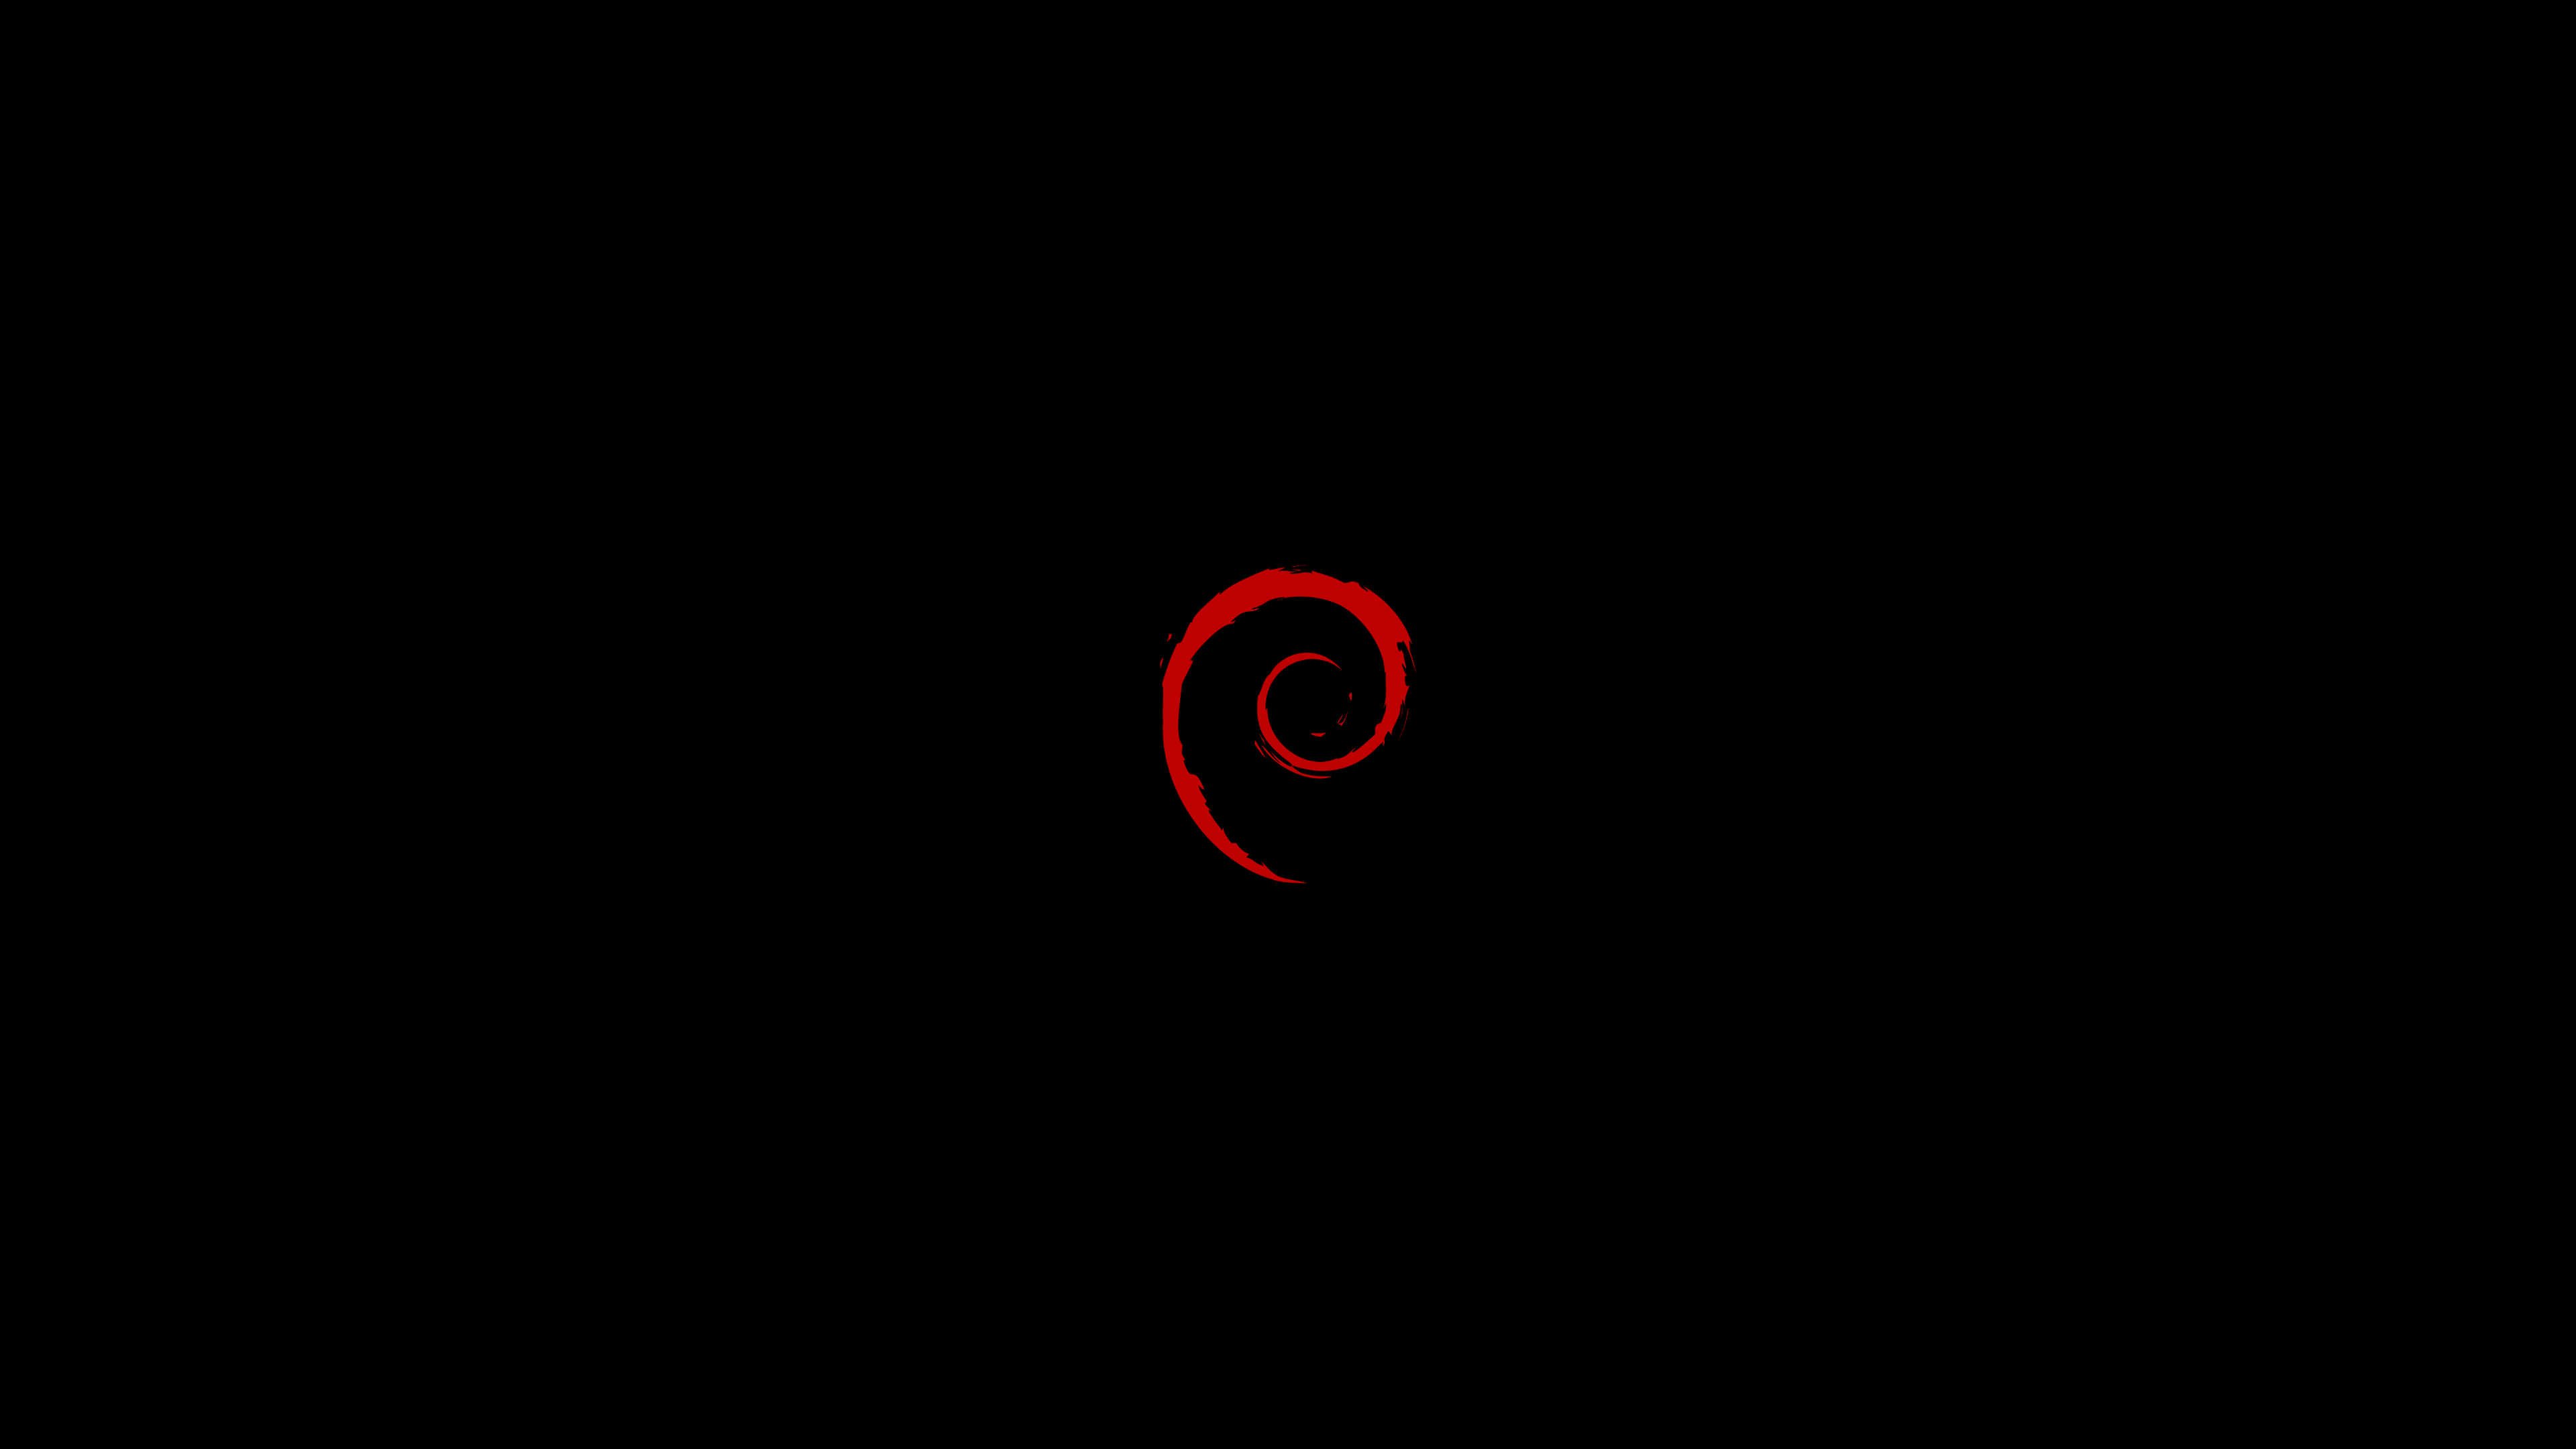 Linux Debian Wallpaper for Desktop 4K 3840x2160